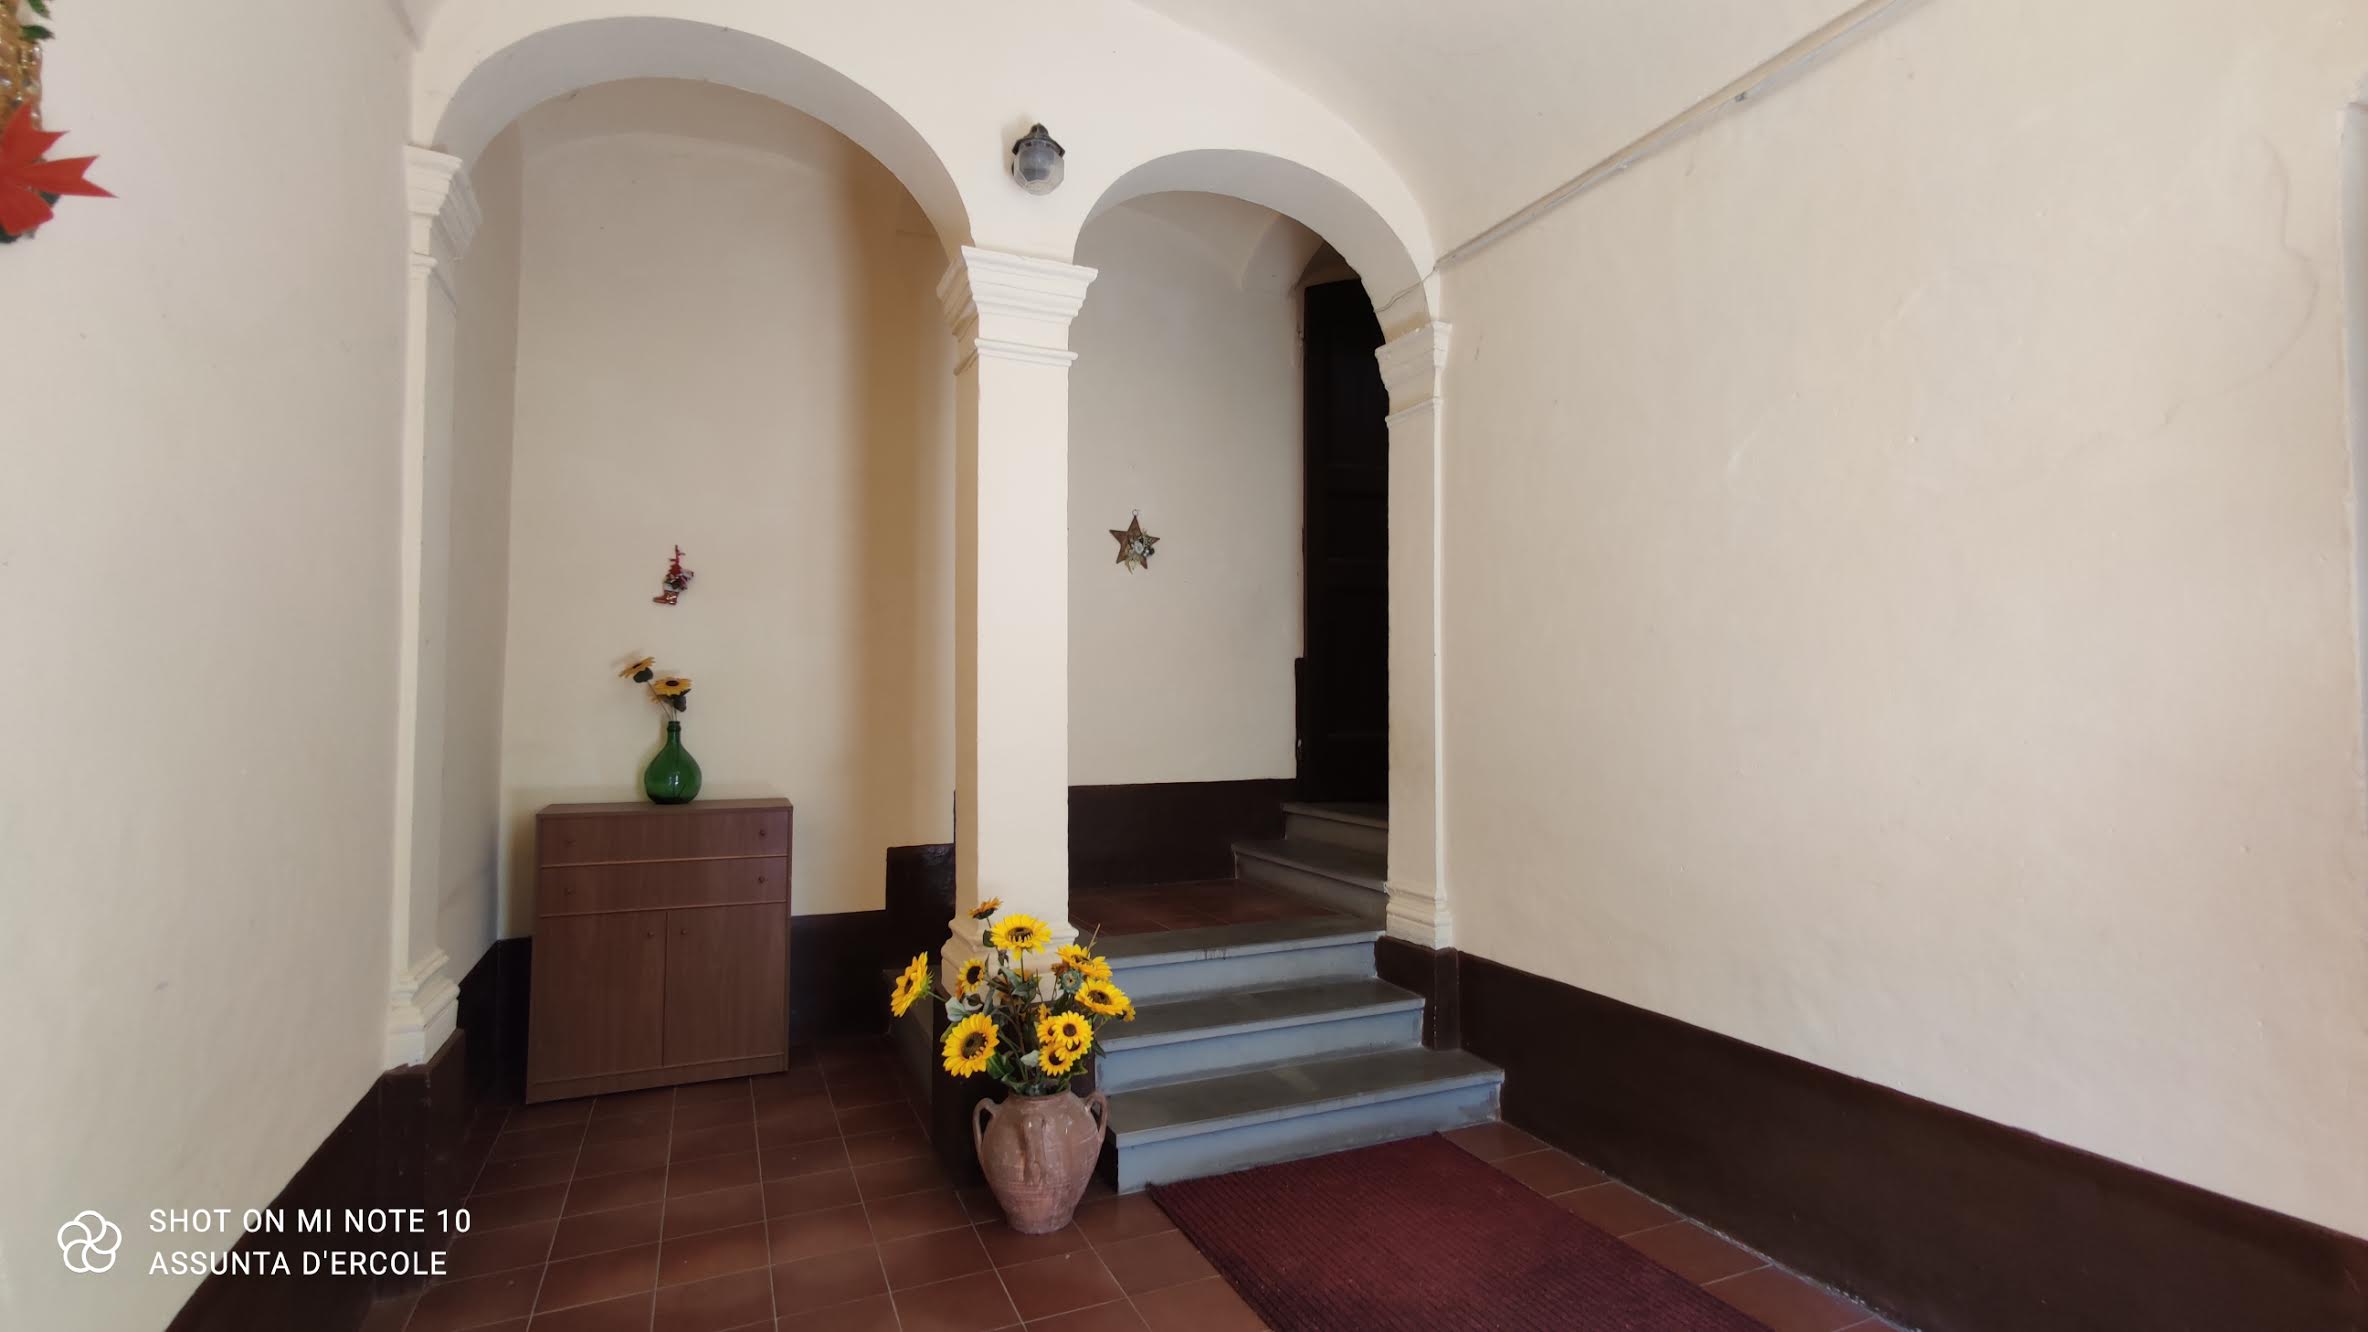 rif 1345 Casalanguida (CH) – Porzione di abitazione del 1800 – € 70000